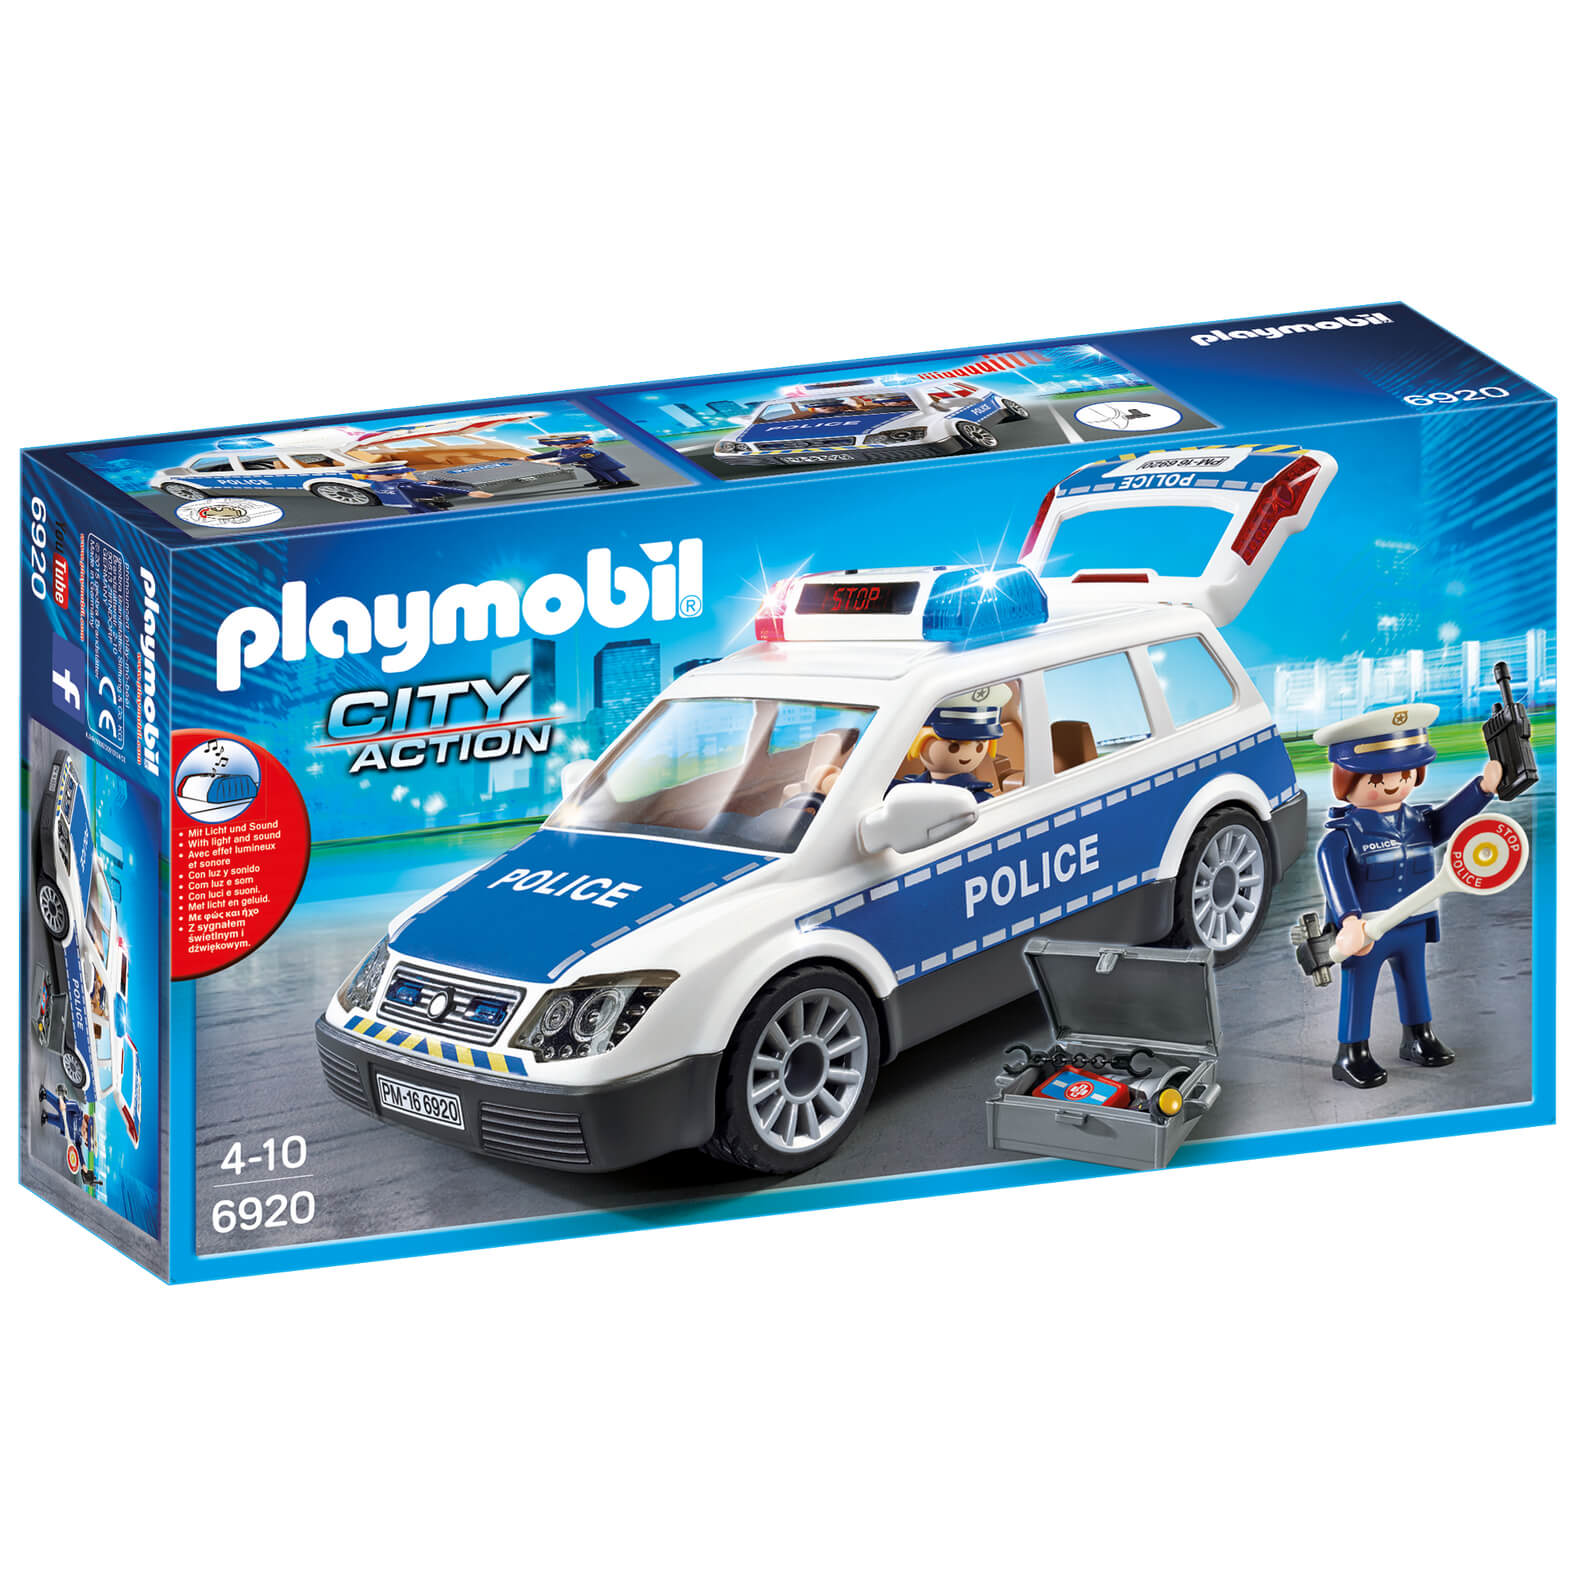 Playmobil City Action Coche de policía con luces y sonido (6920)